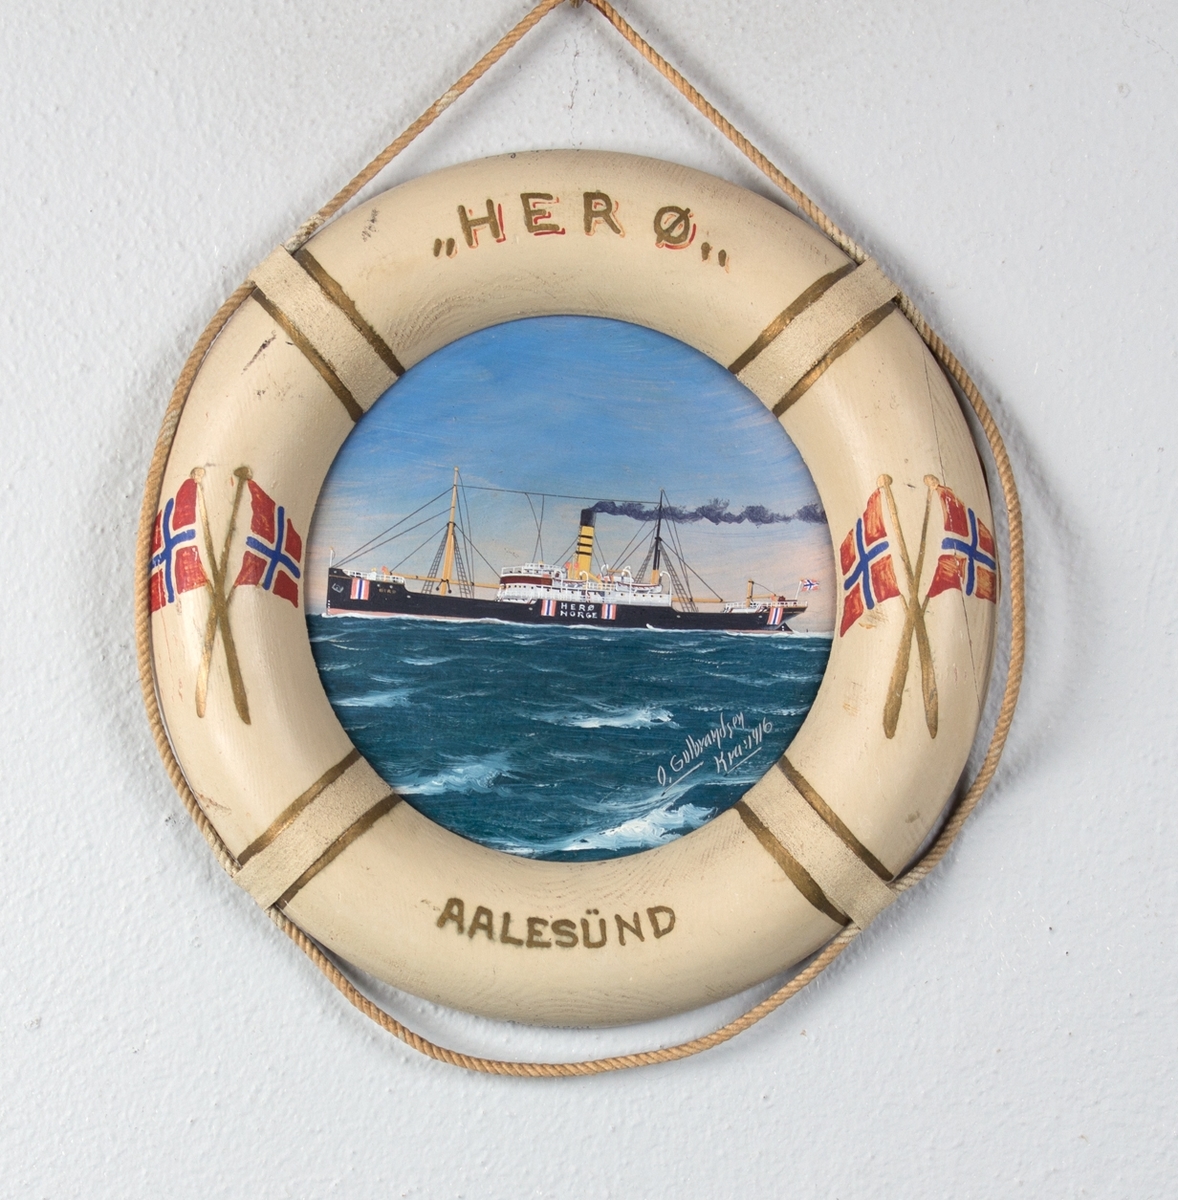 Skipsportrett av DS HERØ under fart i rom sjø. Rammen er utformet som en livbøye dekorert med norske flagg og skipets navn og hjemmehavn. Skipet har påmalt nøytralitetsmerker på skutesiden.